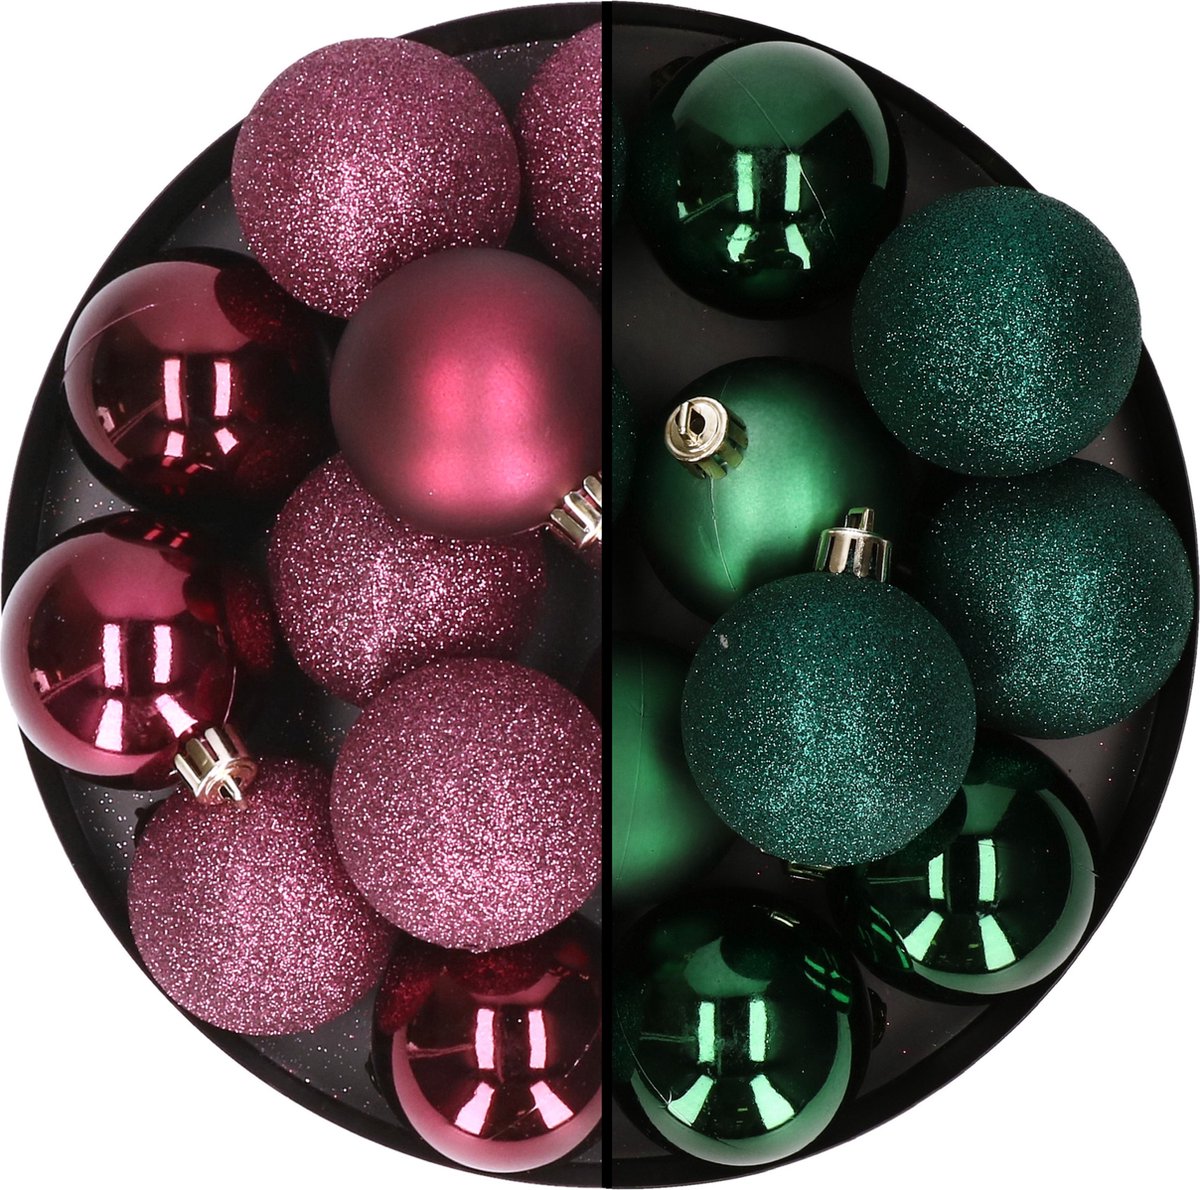 24x stuks kunststof kerstballen mix van aubergine en donkergroen 6 cm -  Kerstversiering | bol